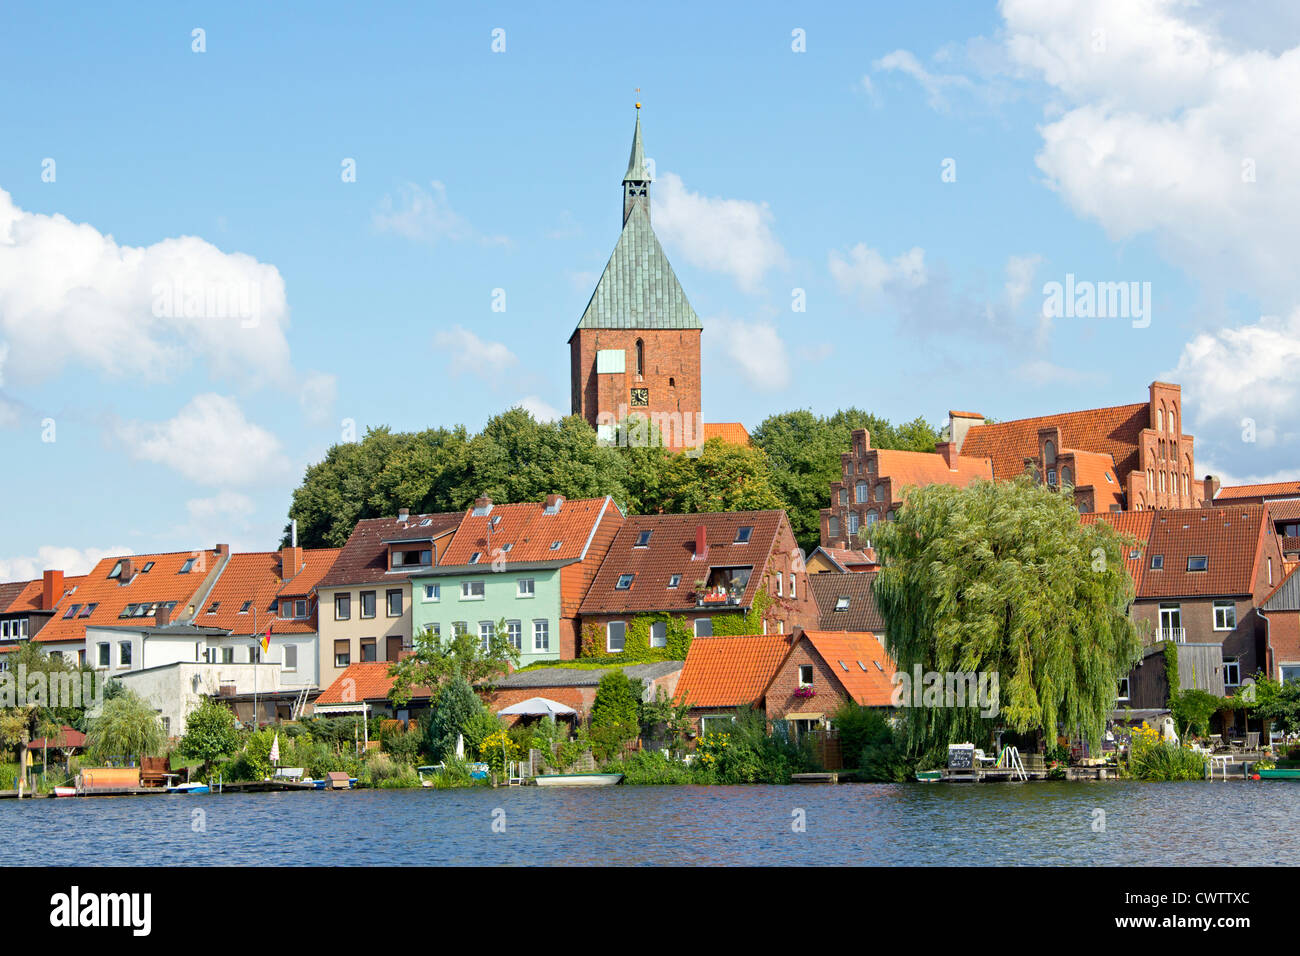 Altstadt und See Ziegel, Mölln, Schleswig-Holstein, Deutschland  Stockfotografie - Alamy